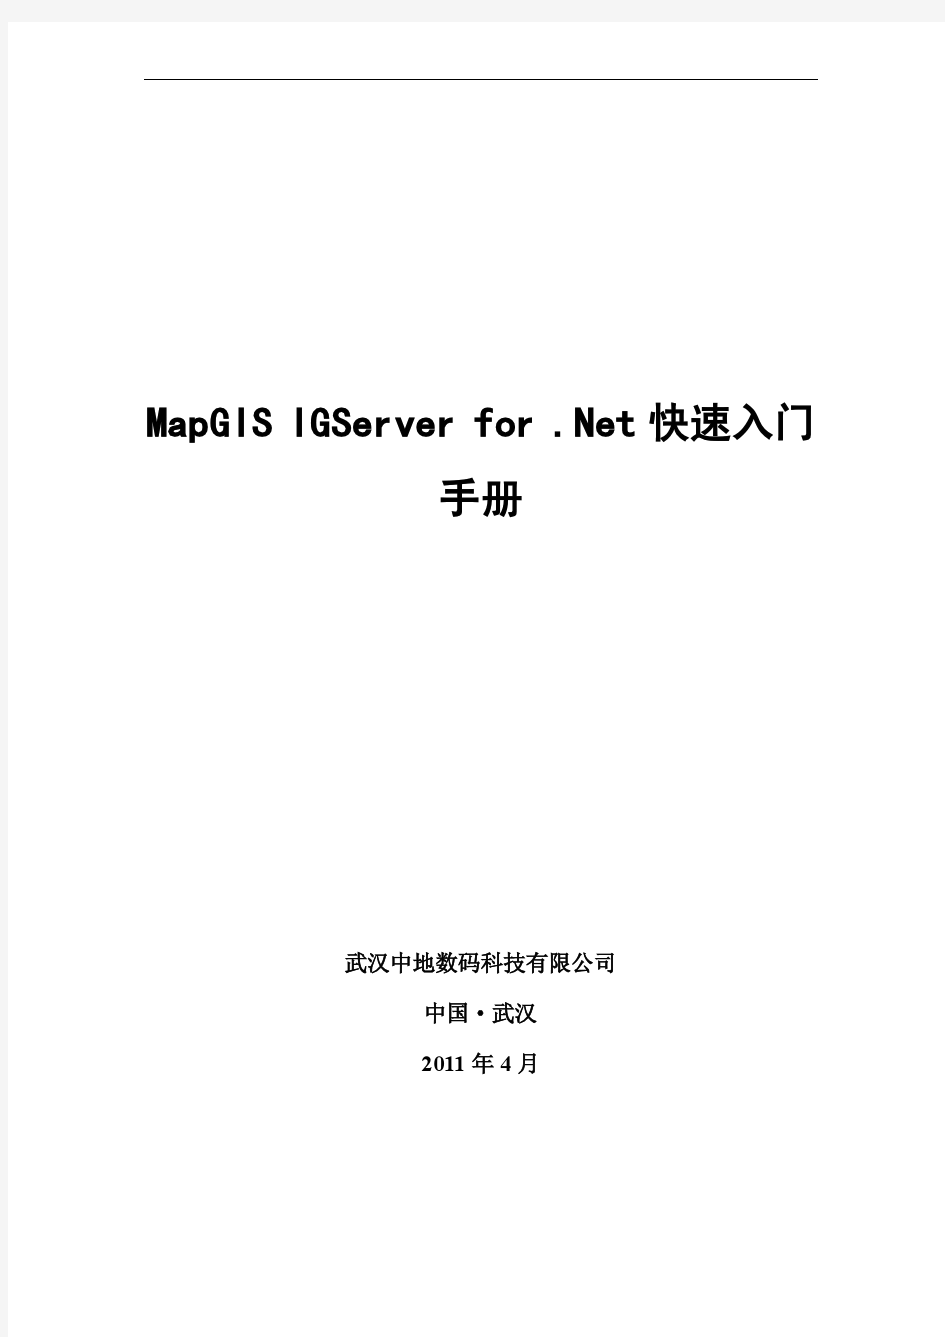 MapGIS+IGServer+for+.Net+快速入门手册